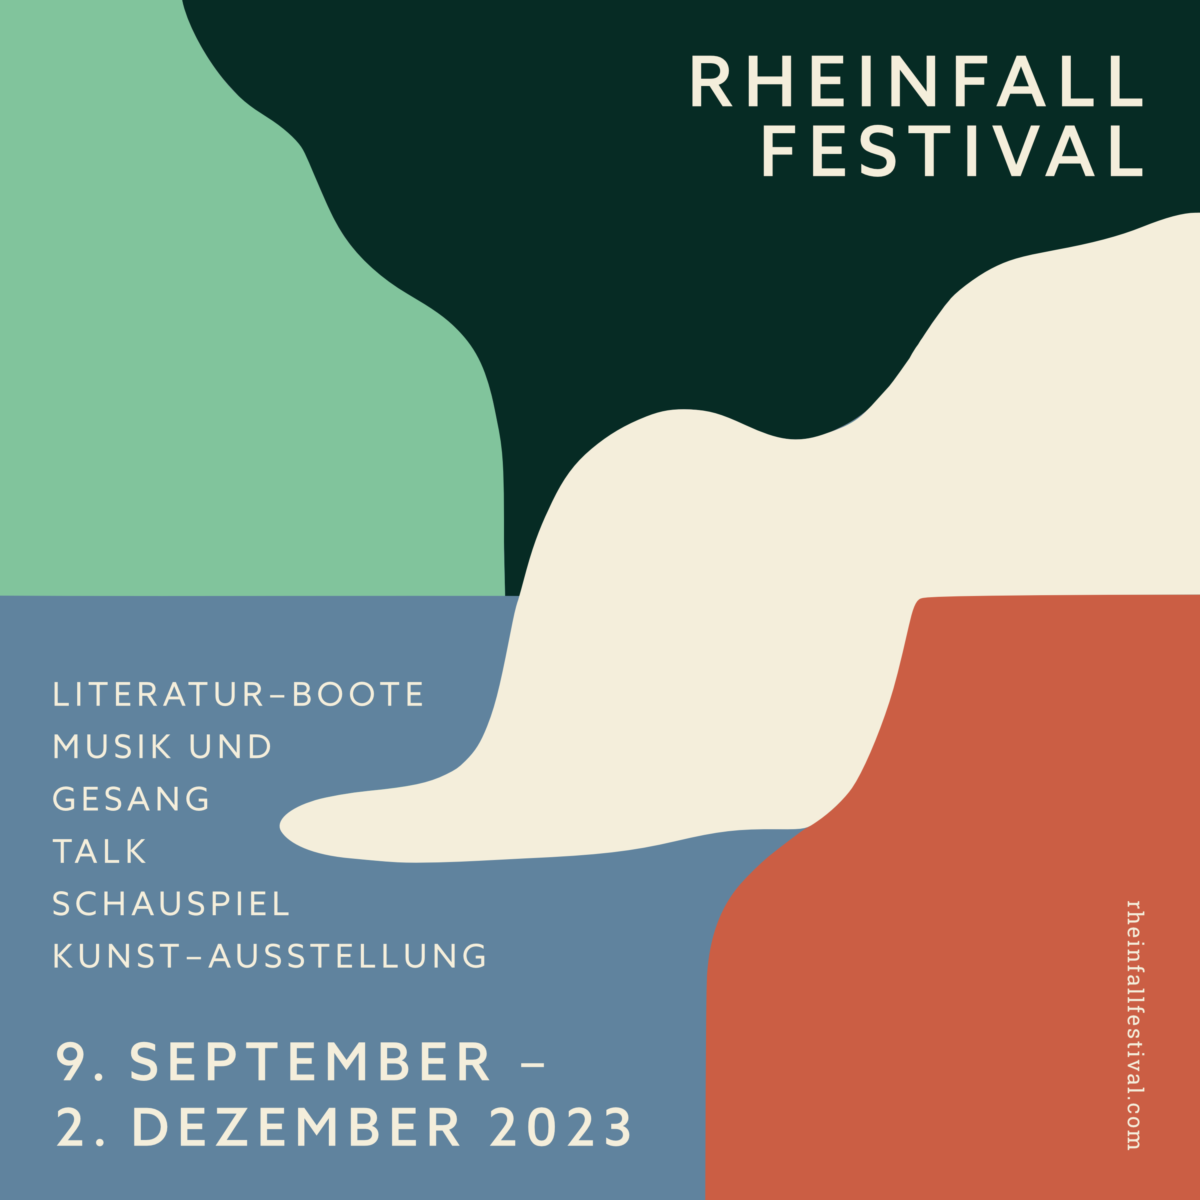 (c) Rheinfallfestival.com